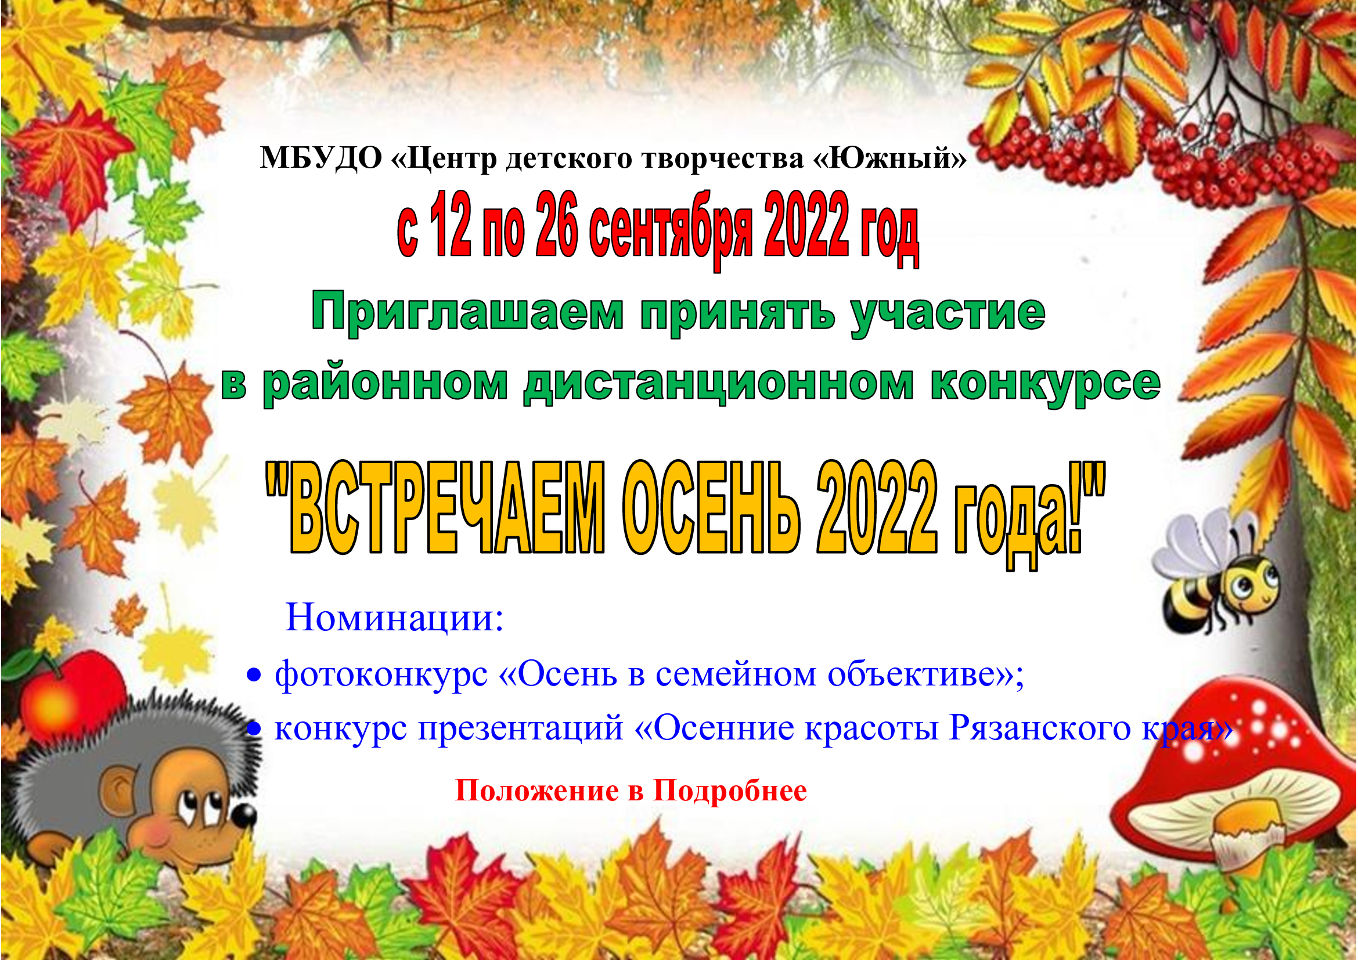 Районный дистанционный конкурс «Встречаем осень 2022 года»